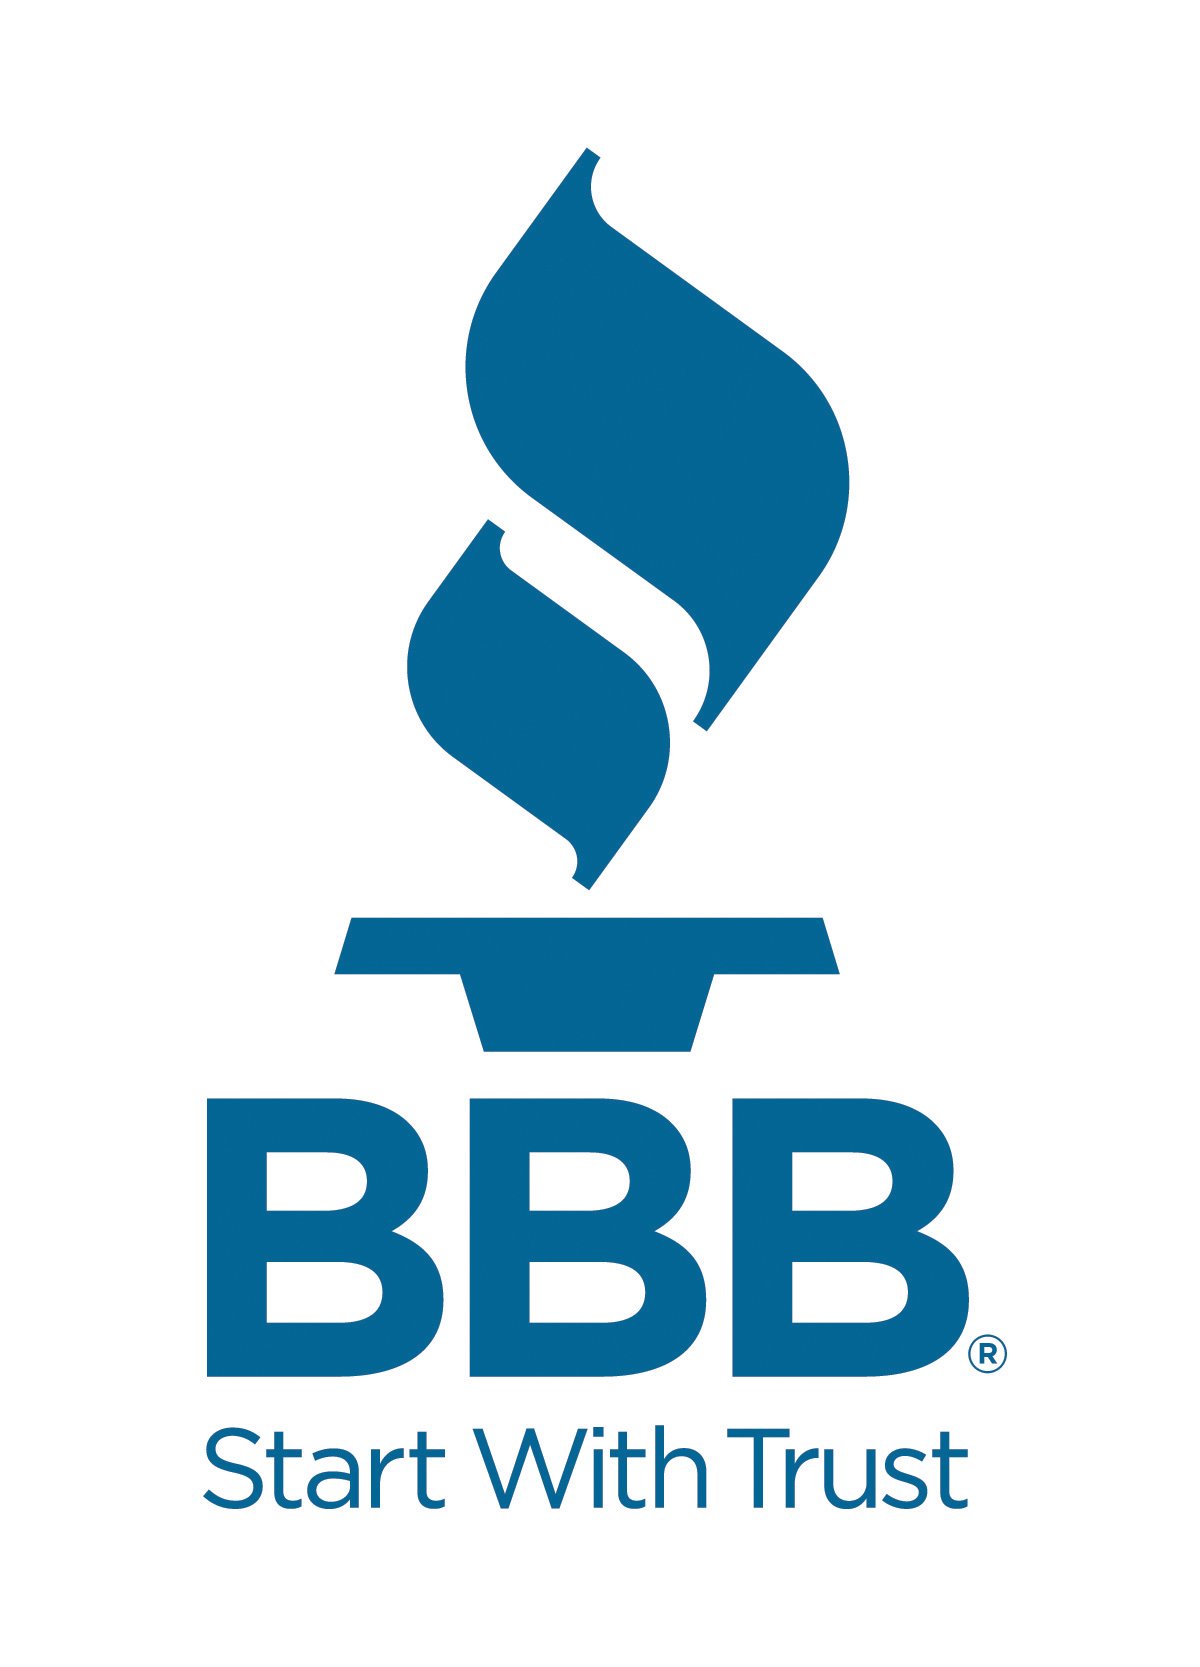 Better Business Bureau - Cincinnati